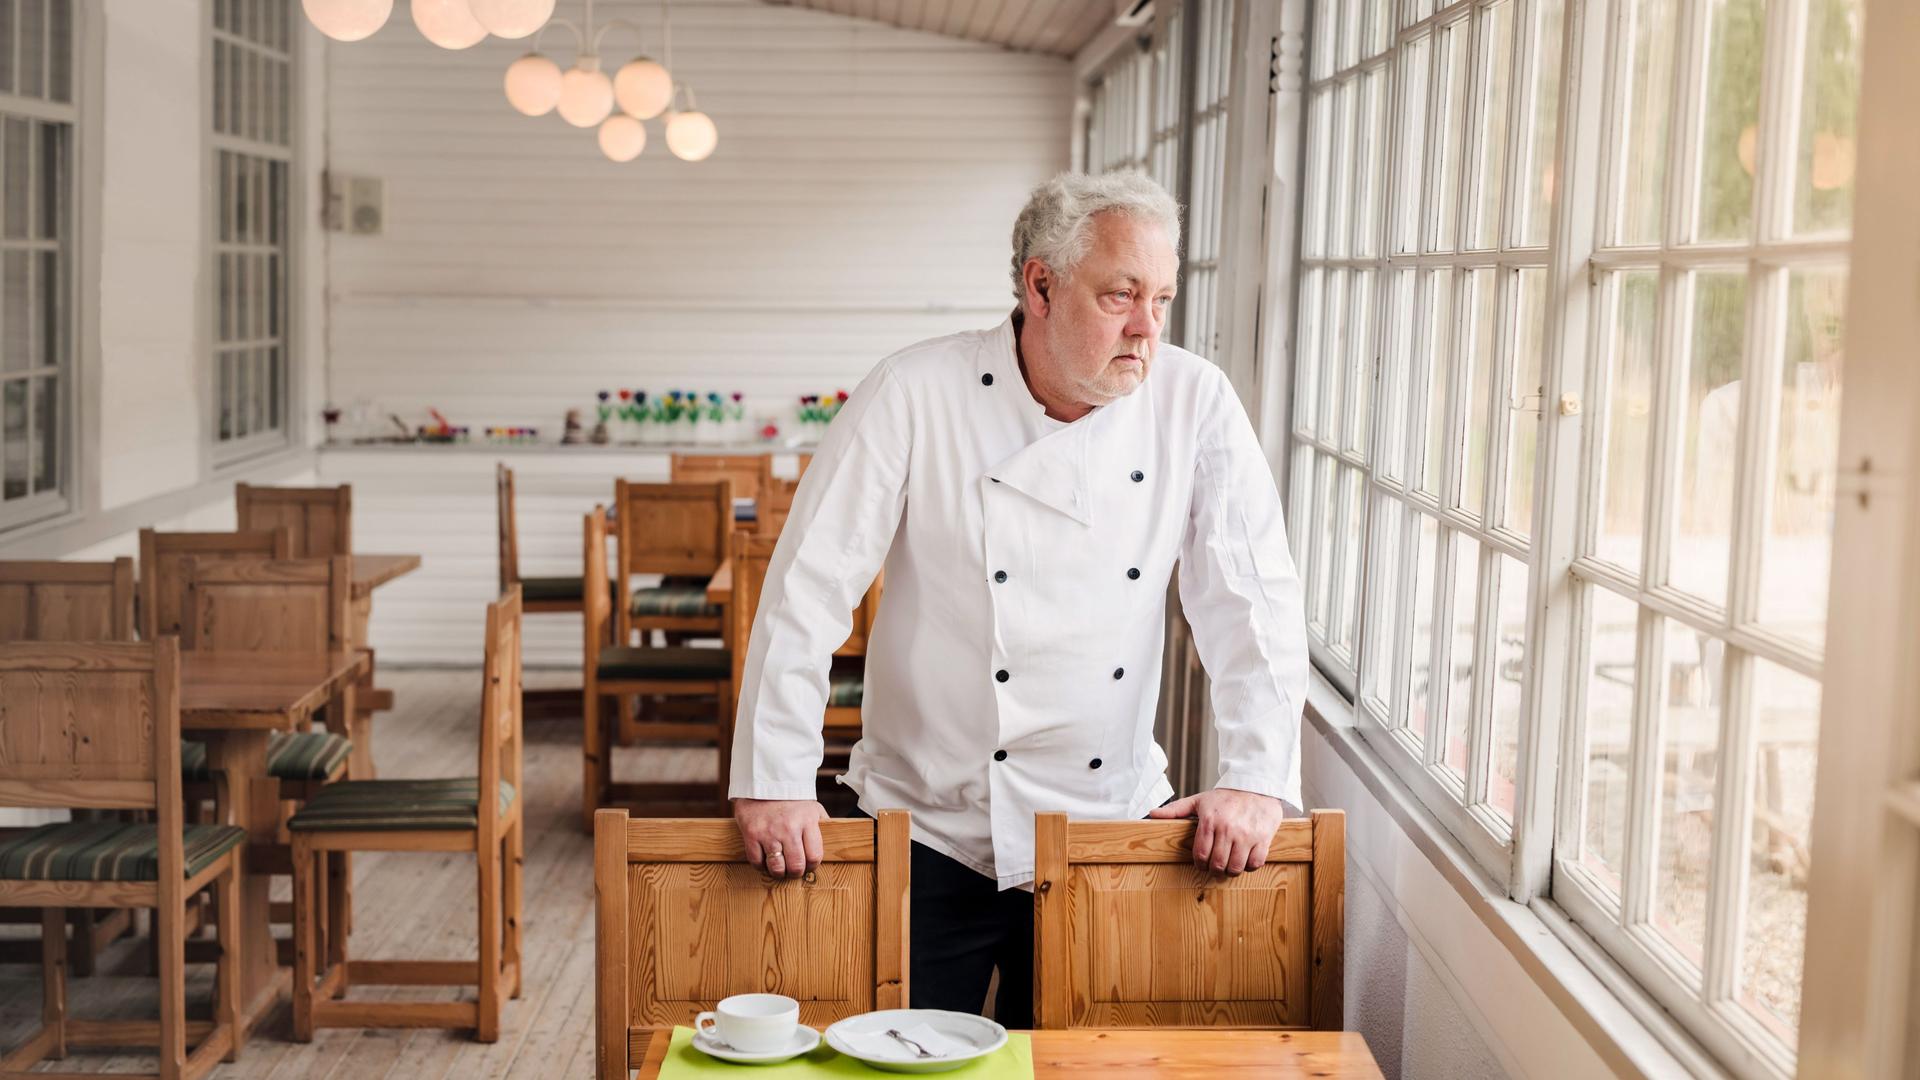 Ein Mann in weißer Kochjacke steht in einem leerem Restaurant an einem Tisch. Er blickt traurig aus dem Fenster.